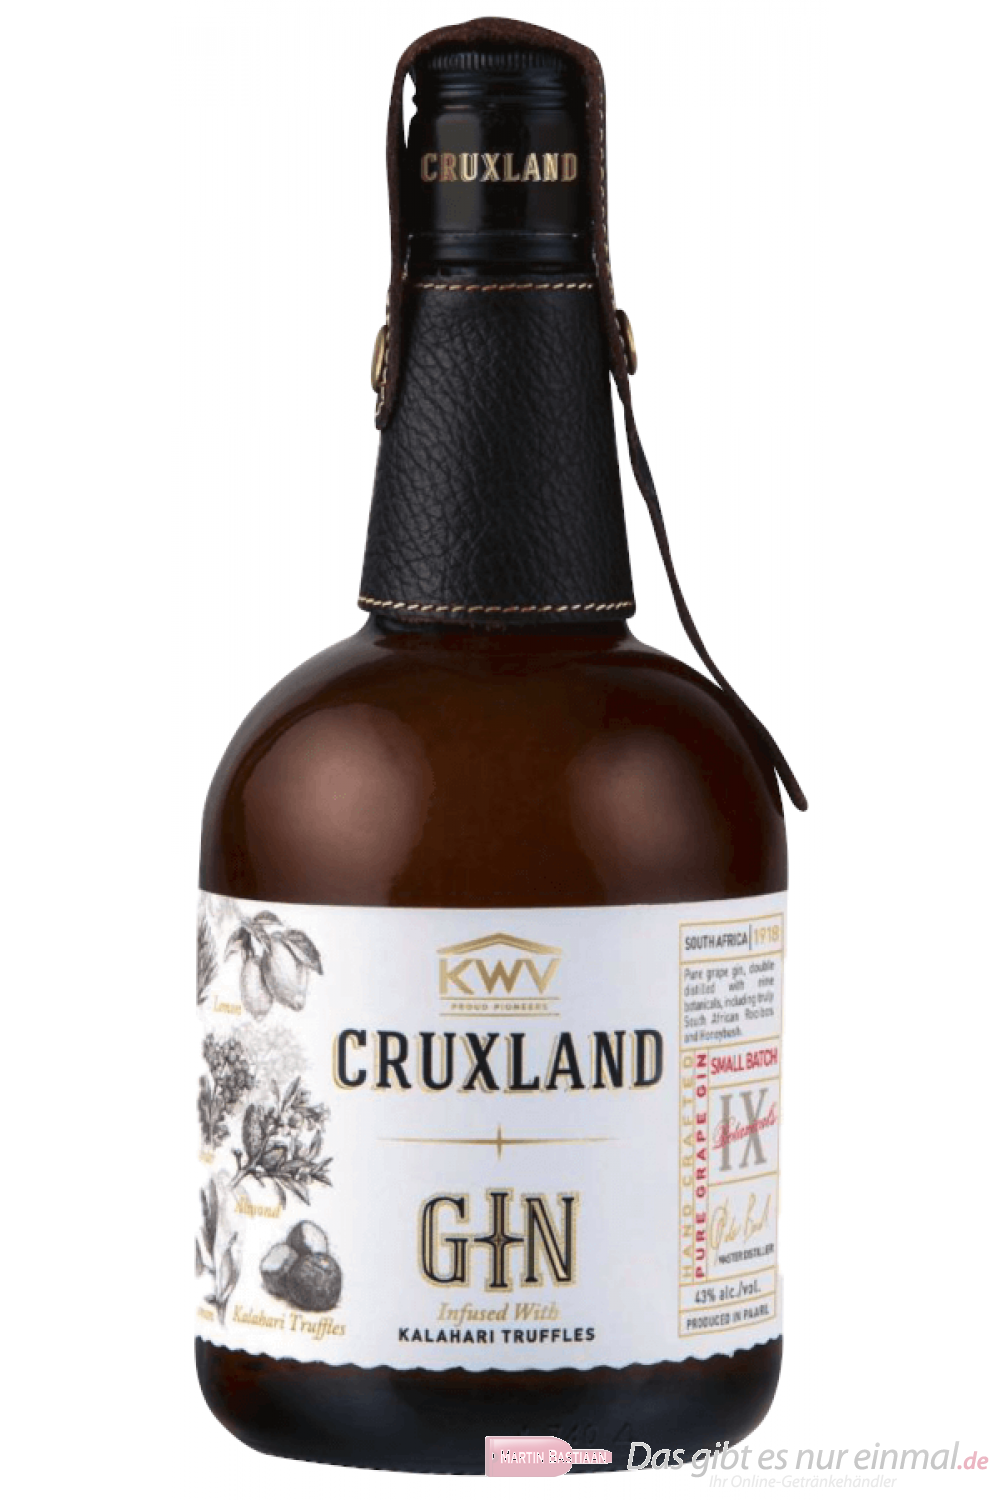 Cruxland London Dry Gin 0,7l